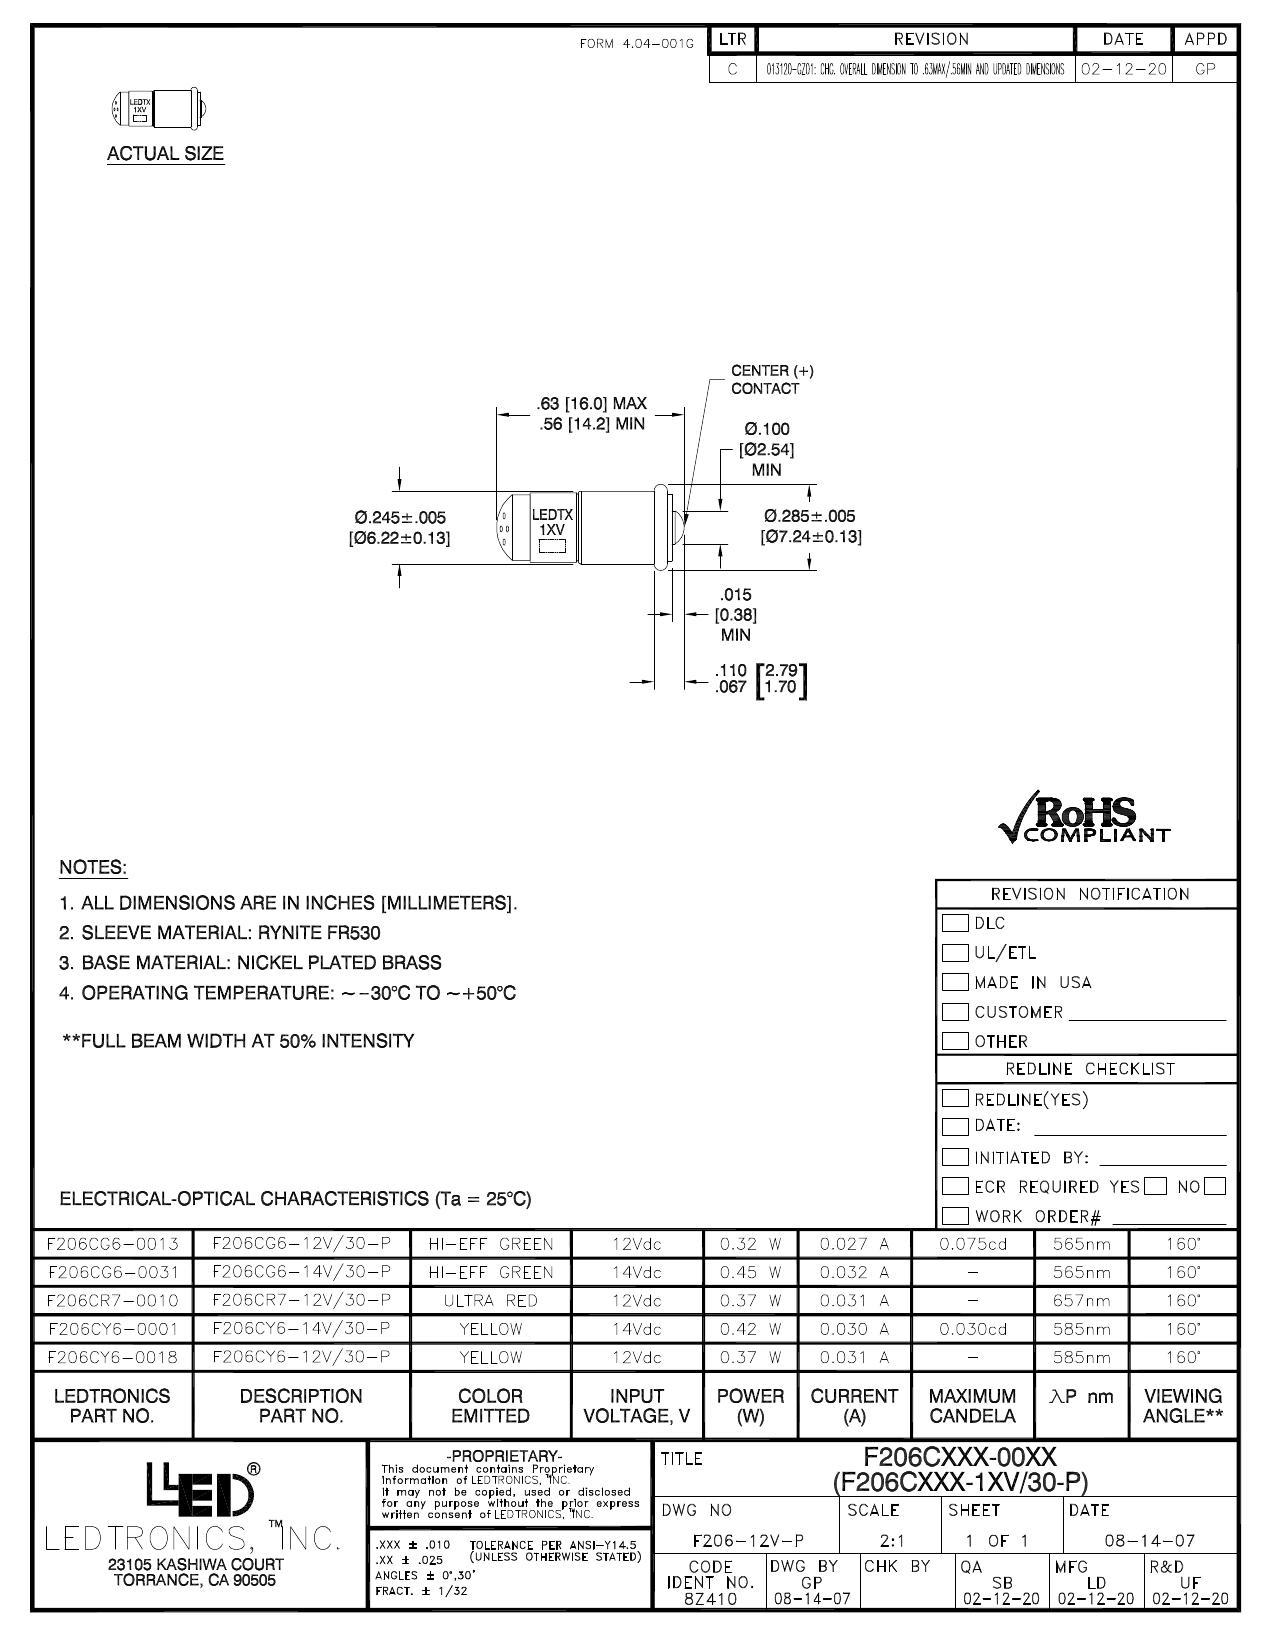 f2o6cxxx-ooxx-f2o6cxxx-ixv3o-p-scale-sheet.pdf